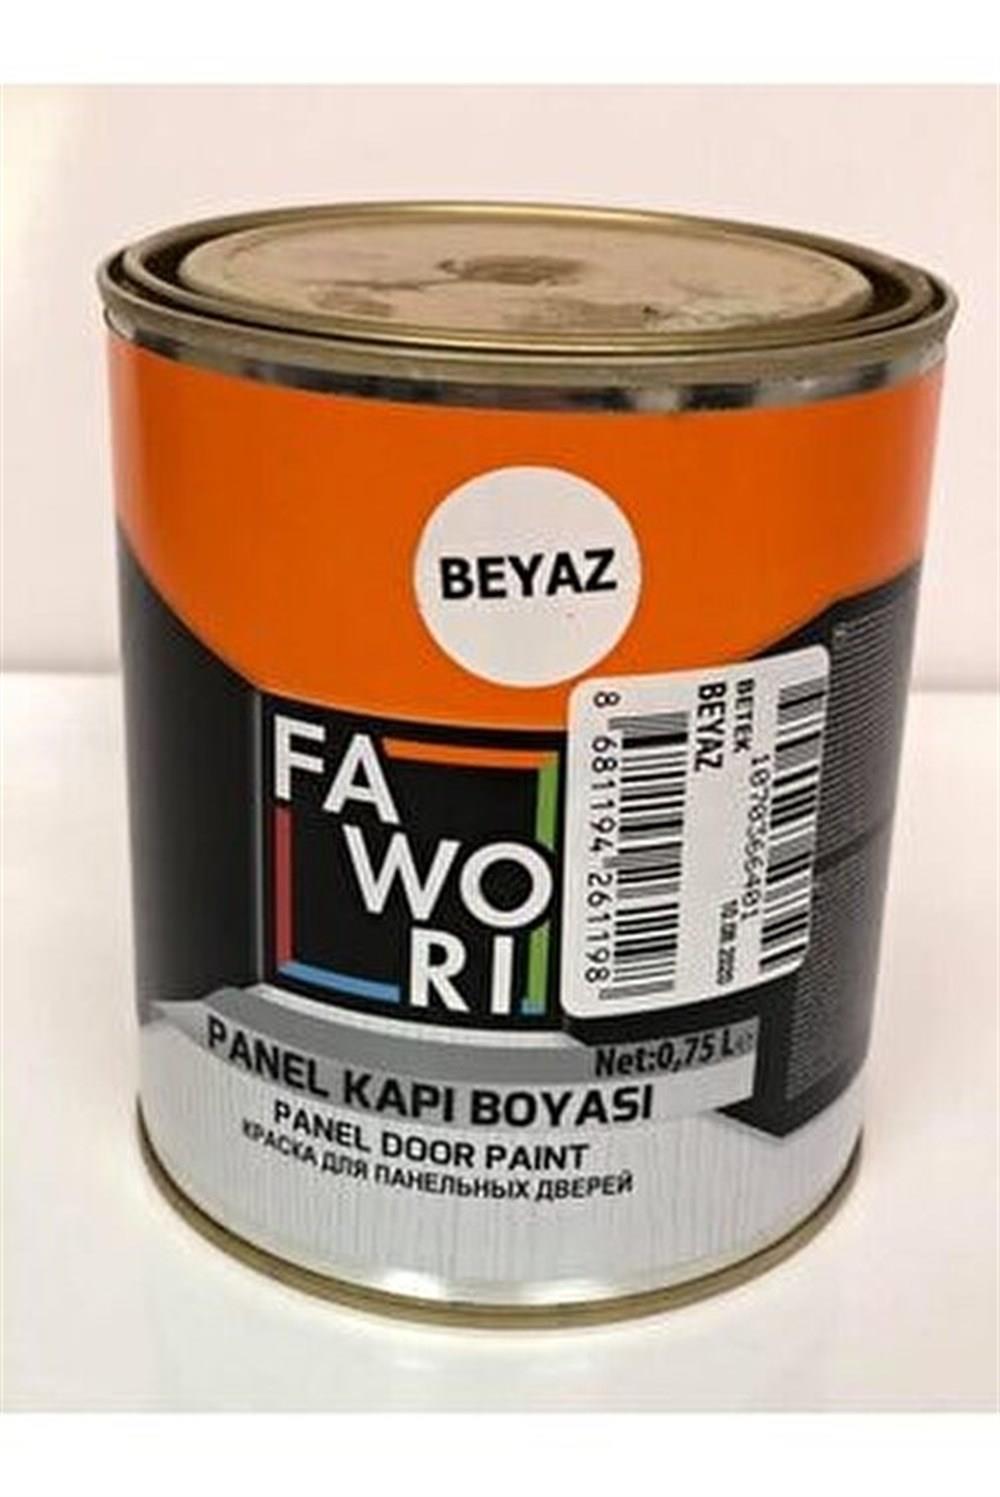 Fawori Panel Kapı Boyası Beyaz 0.75 Lt